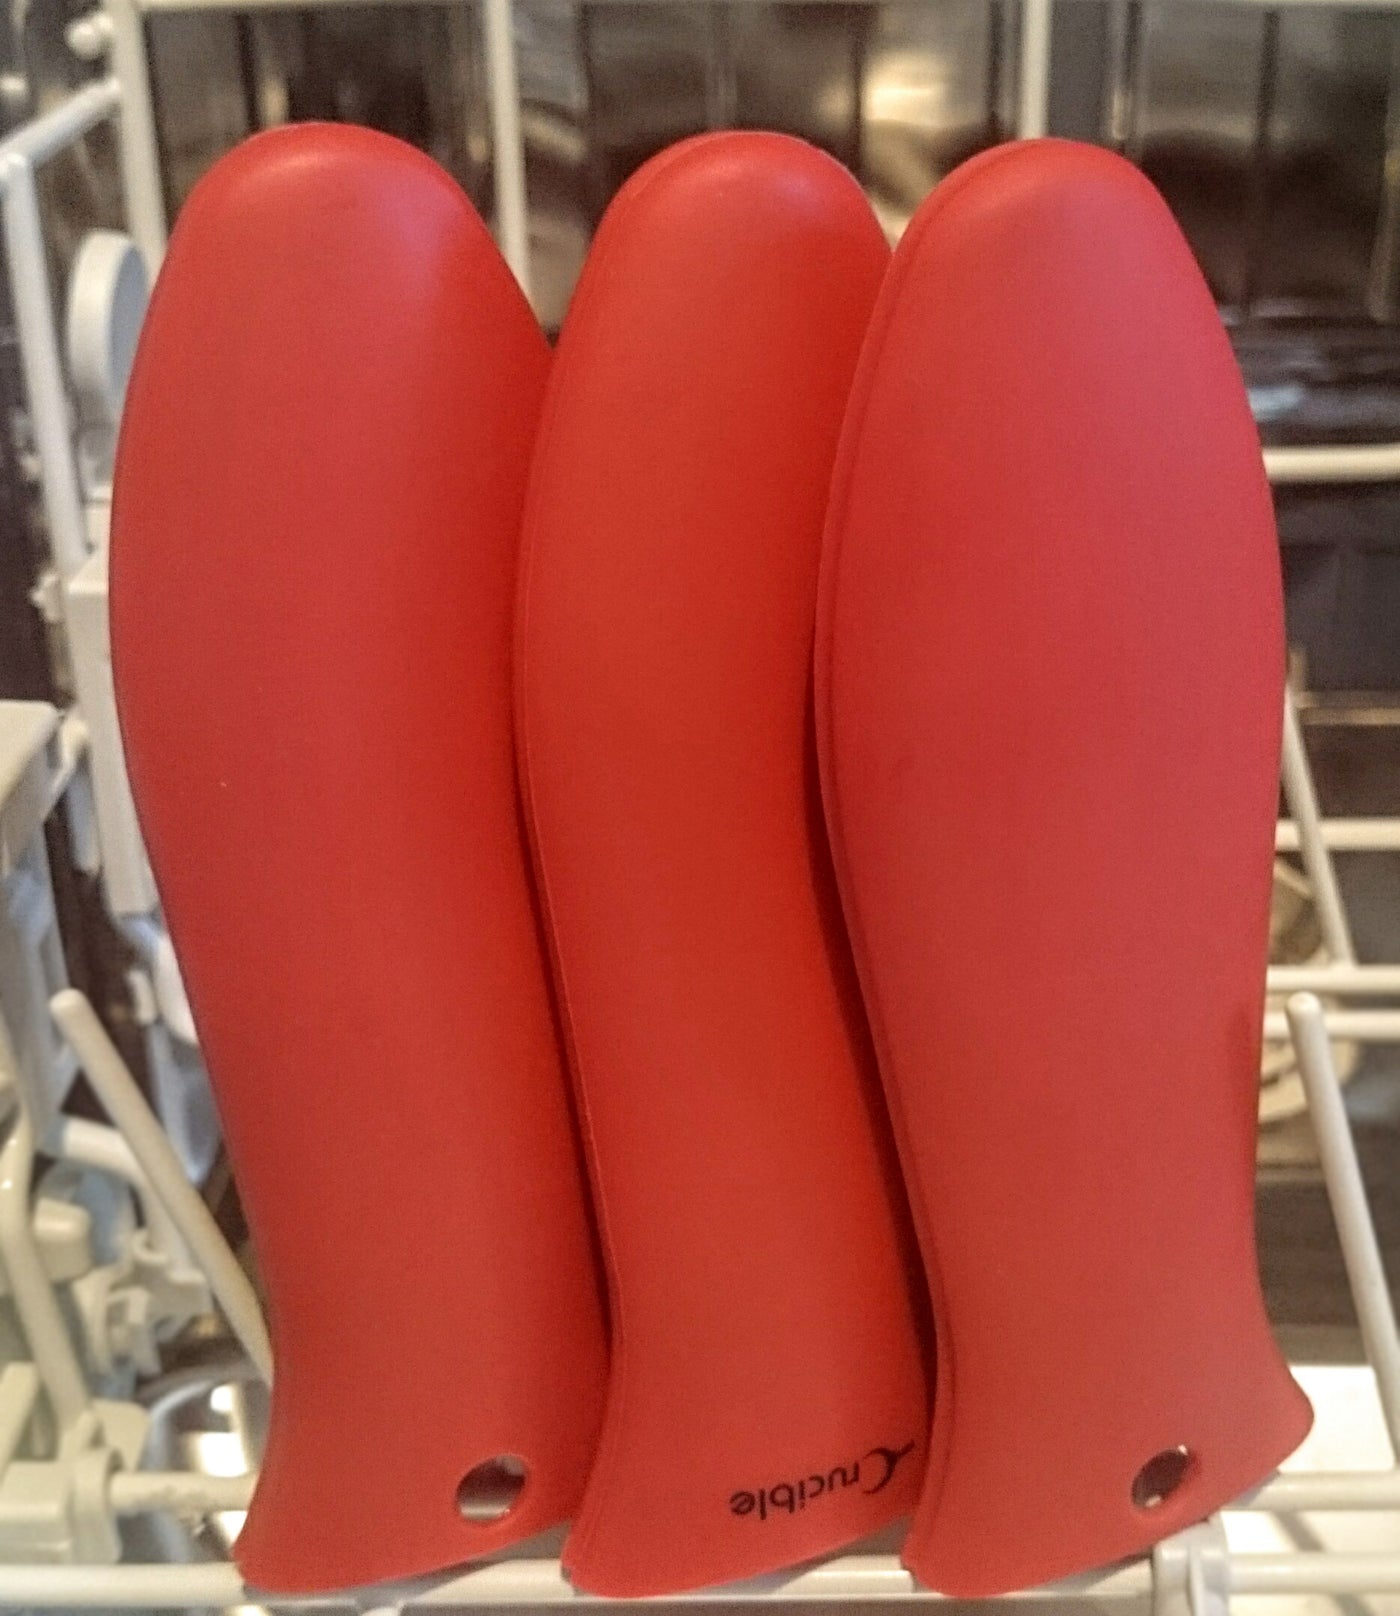 Topflappen aus Silikon, extra groß (XL), rot, für Gusseisenpfannen